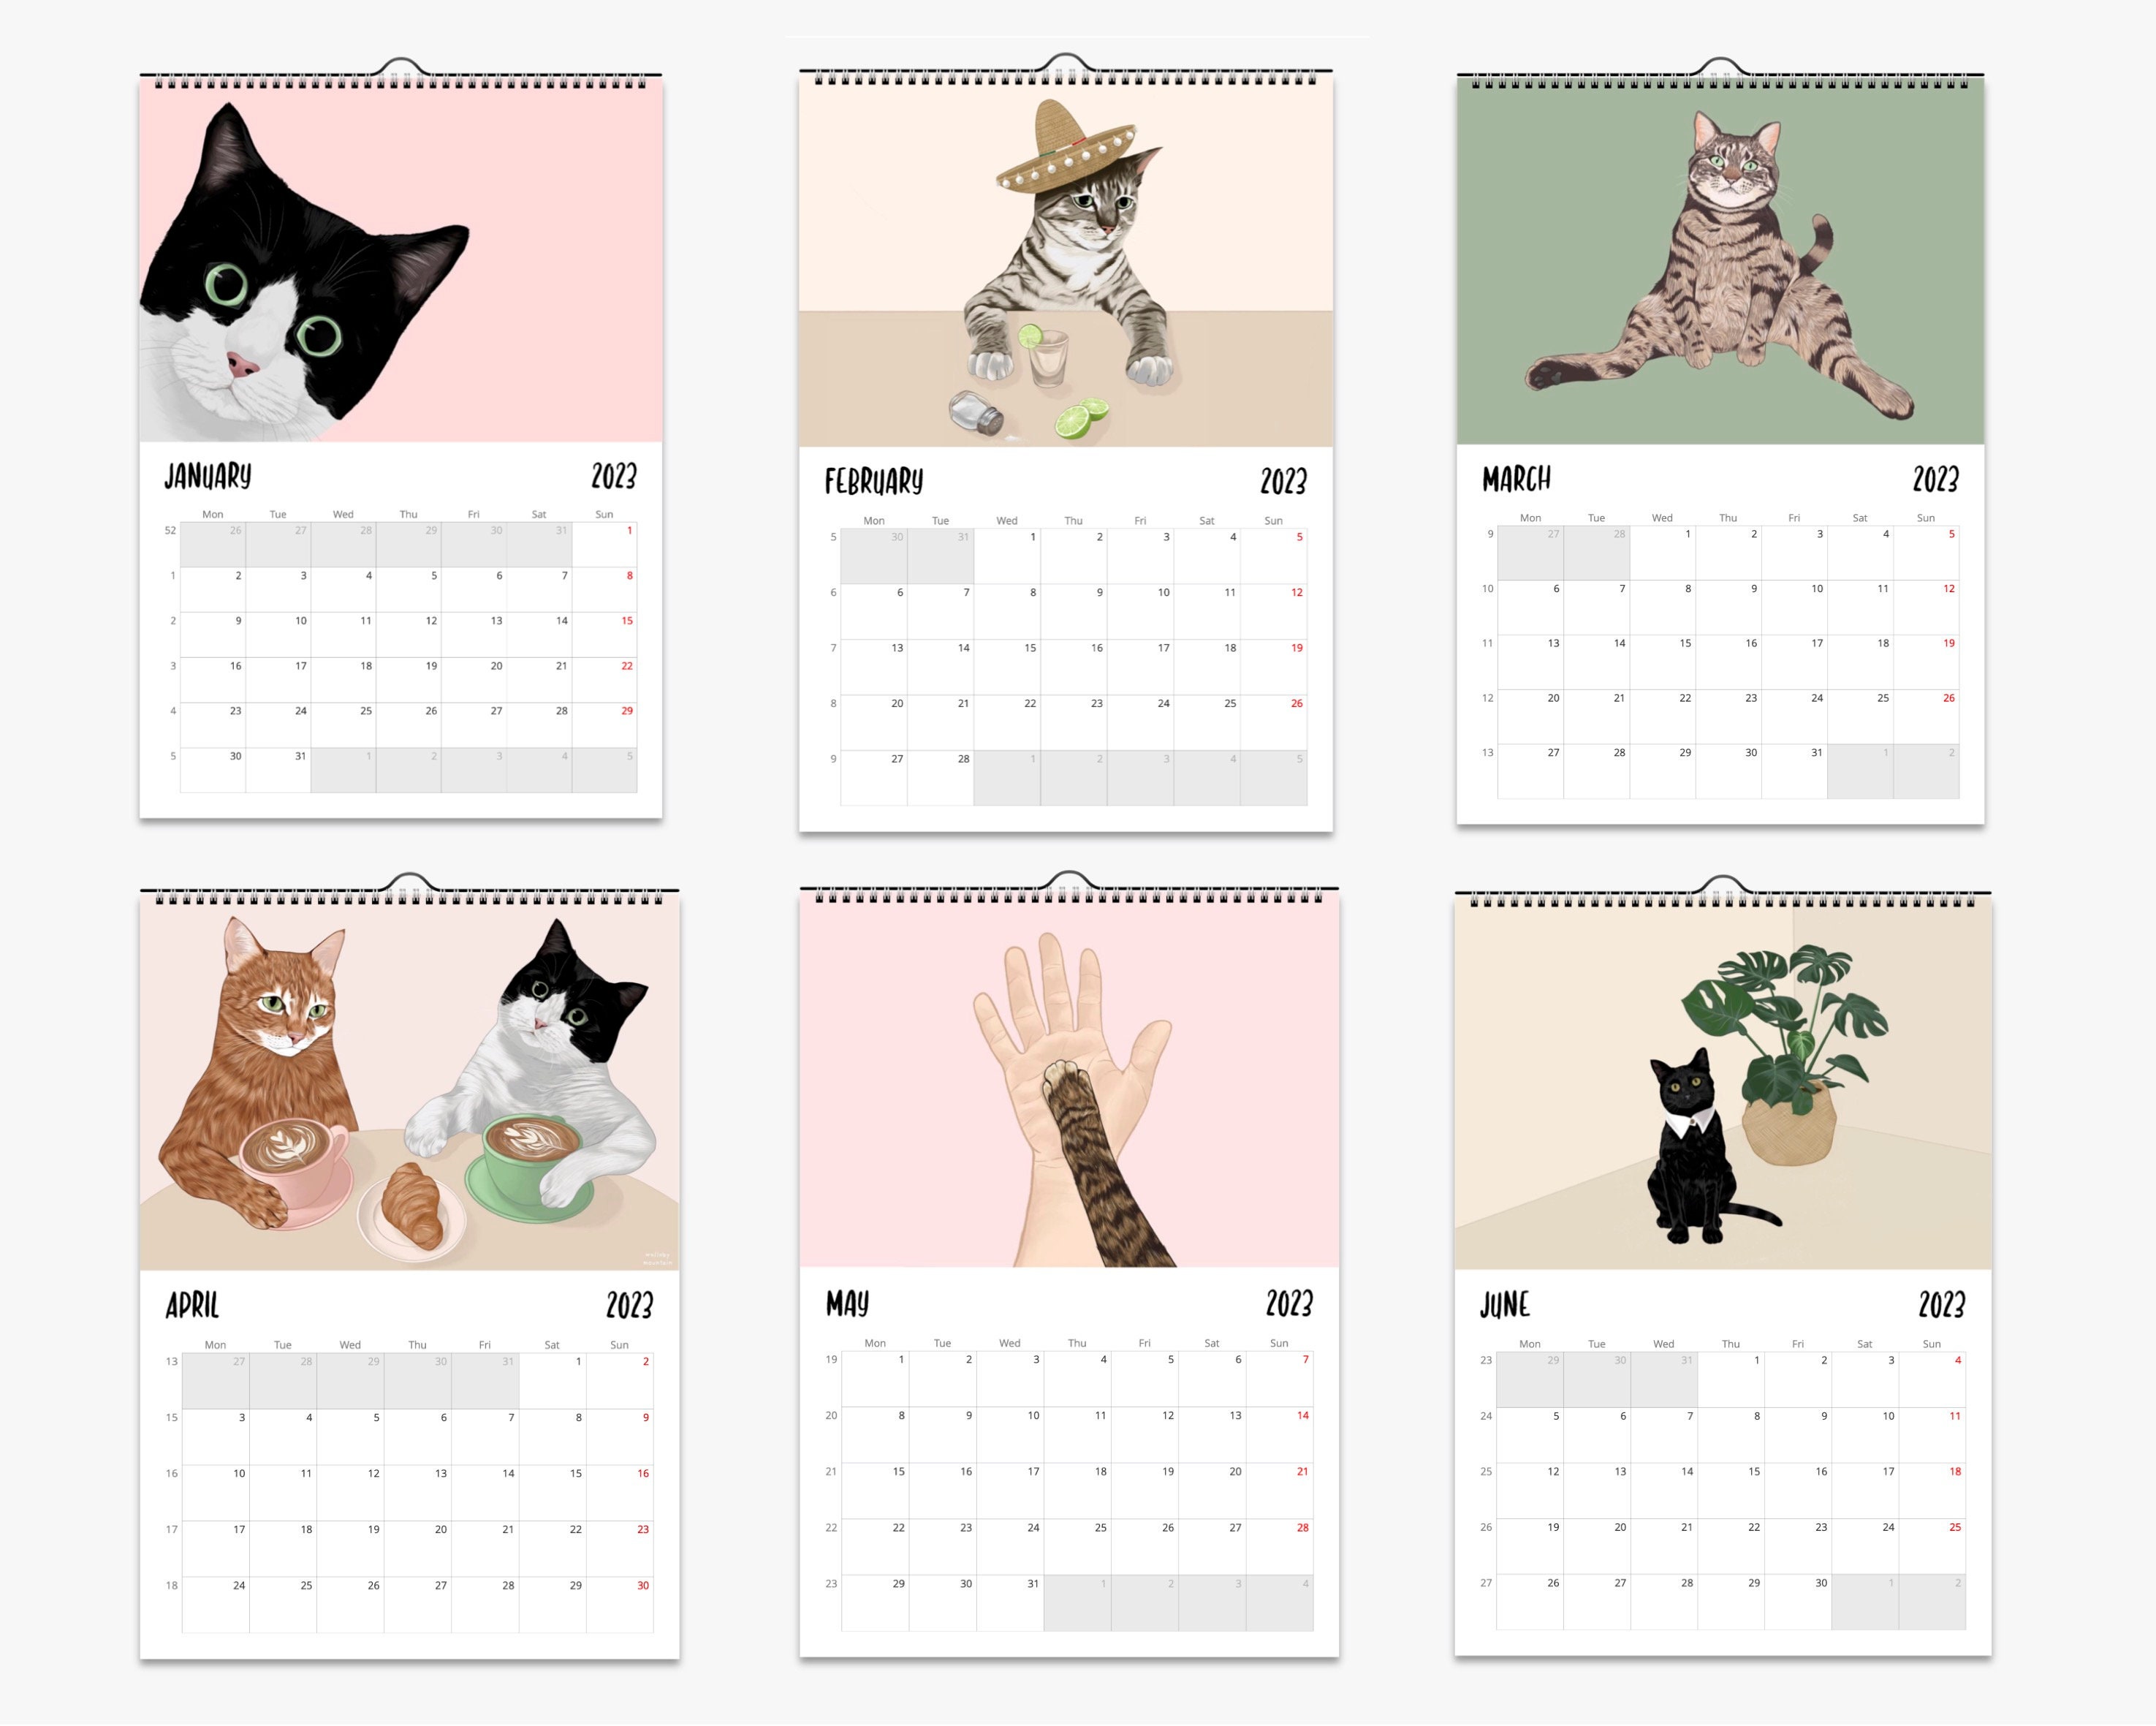 Presco Group Calendrier 2024, calendrier mural chats, calendrier mensuel,  calendrier à suspendre de 16 mois de septembre 2023 à décembre 2024, 30,5 x